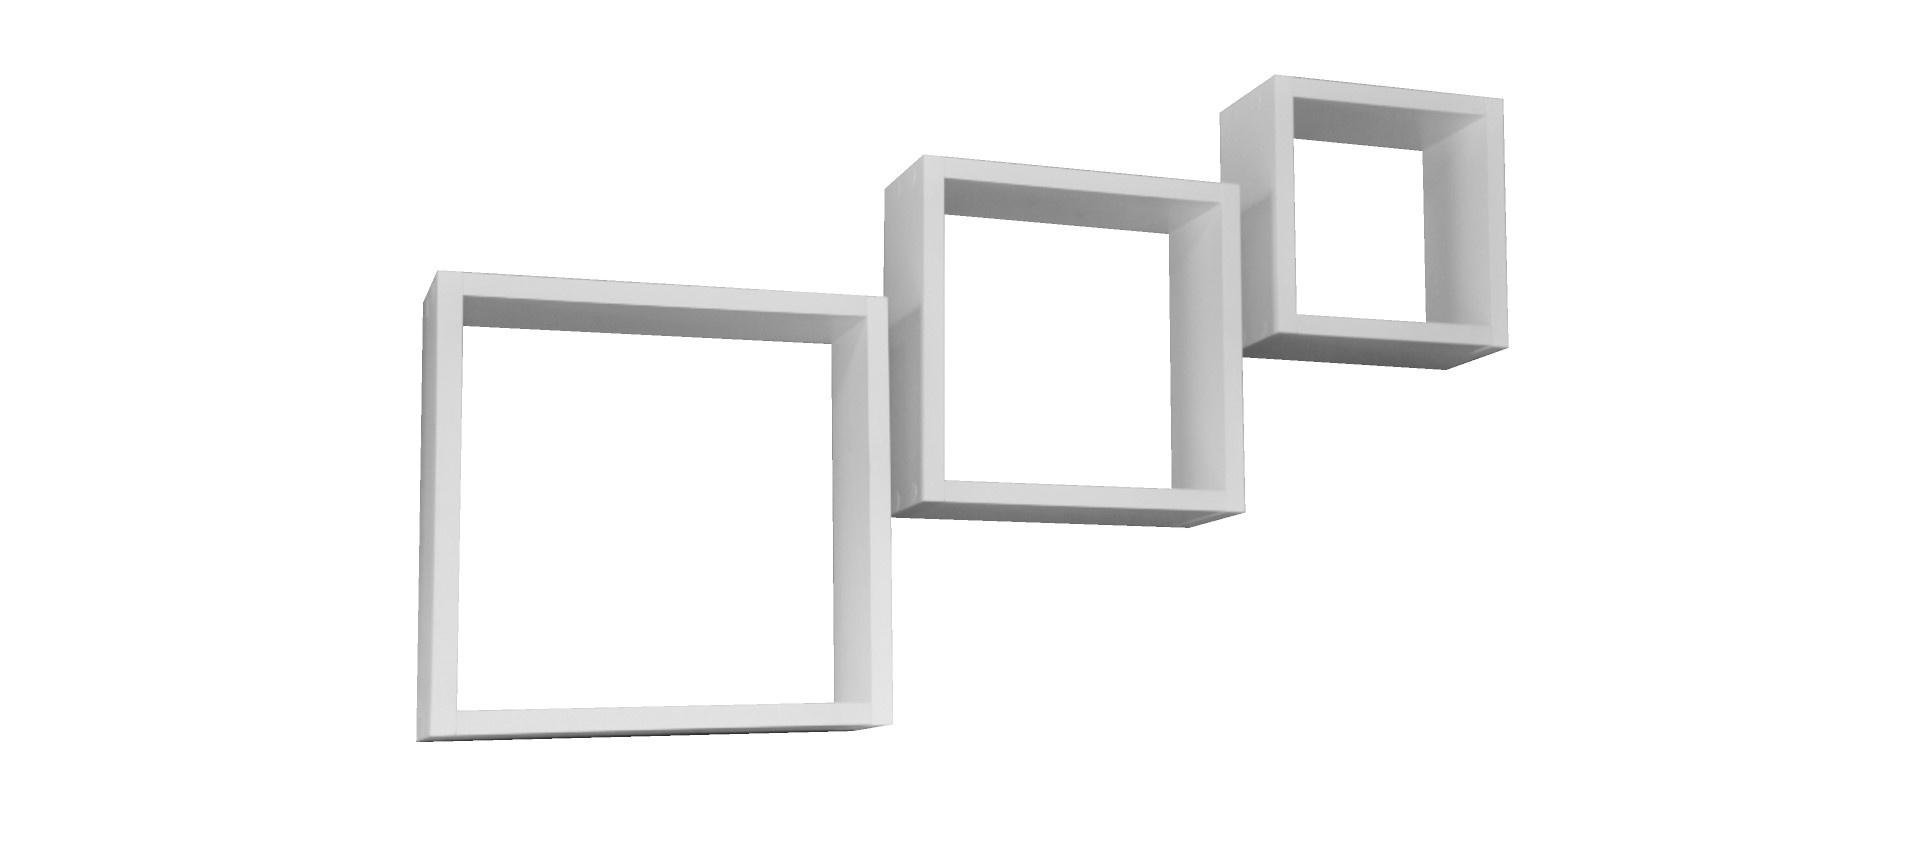 Kit 3 Nichos Decorativos Quadrados em Três Tamanhos P M G:branco - 1